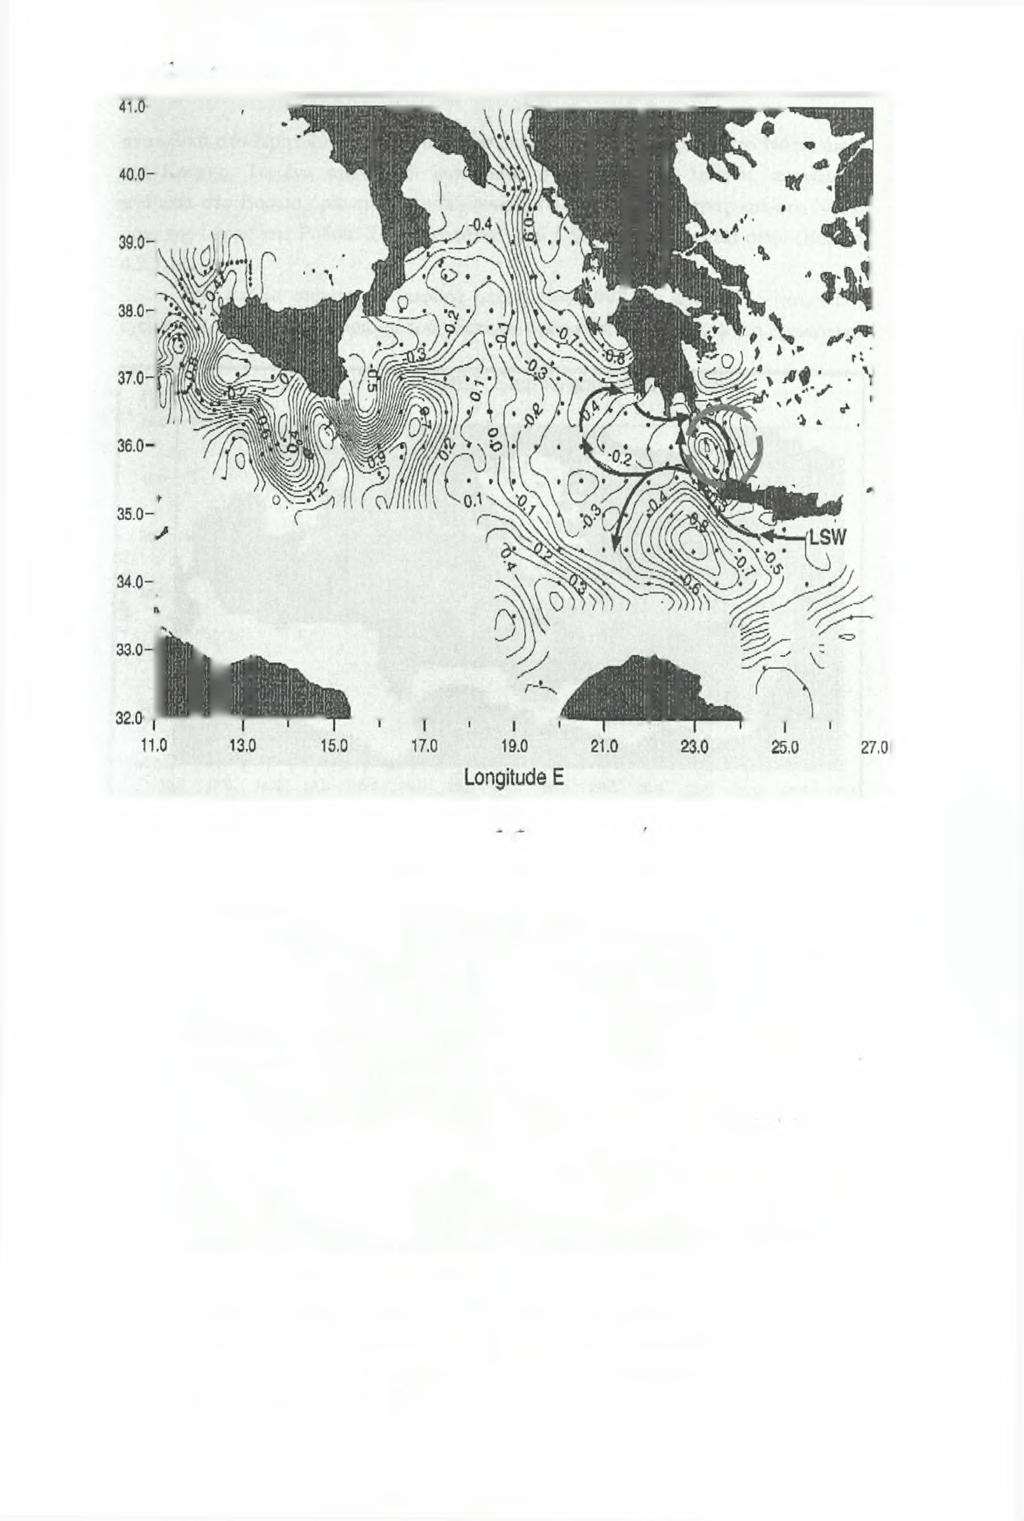 Κεωά/ΜΟ 4-POEM BC-091-103- L a titu d e N 9 9 Εικόνα 4.3.2.2: Δυναμική ανωμαλία ύψους (m /s ) της επιφάνειας σε σχέση με τα 250 dbar για το 1987, (Malanotte-Rizzoli et al., 1999).